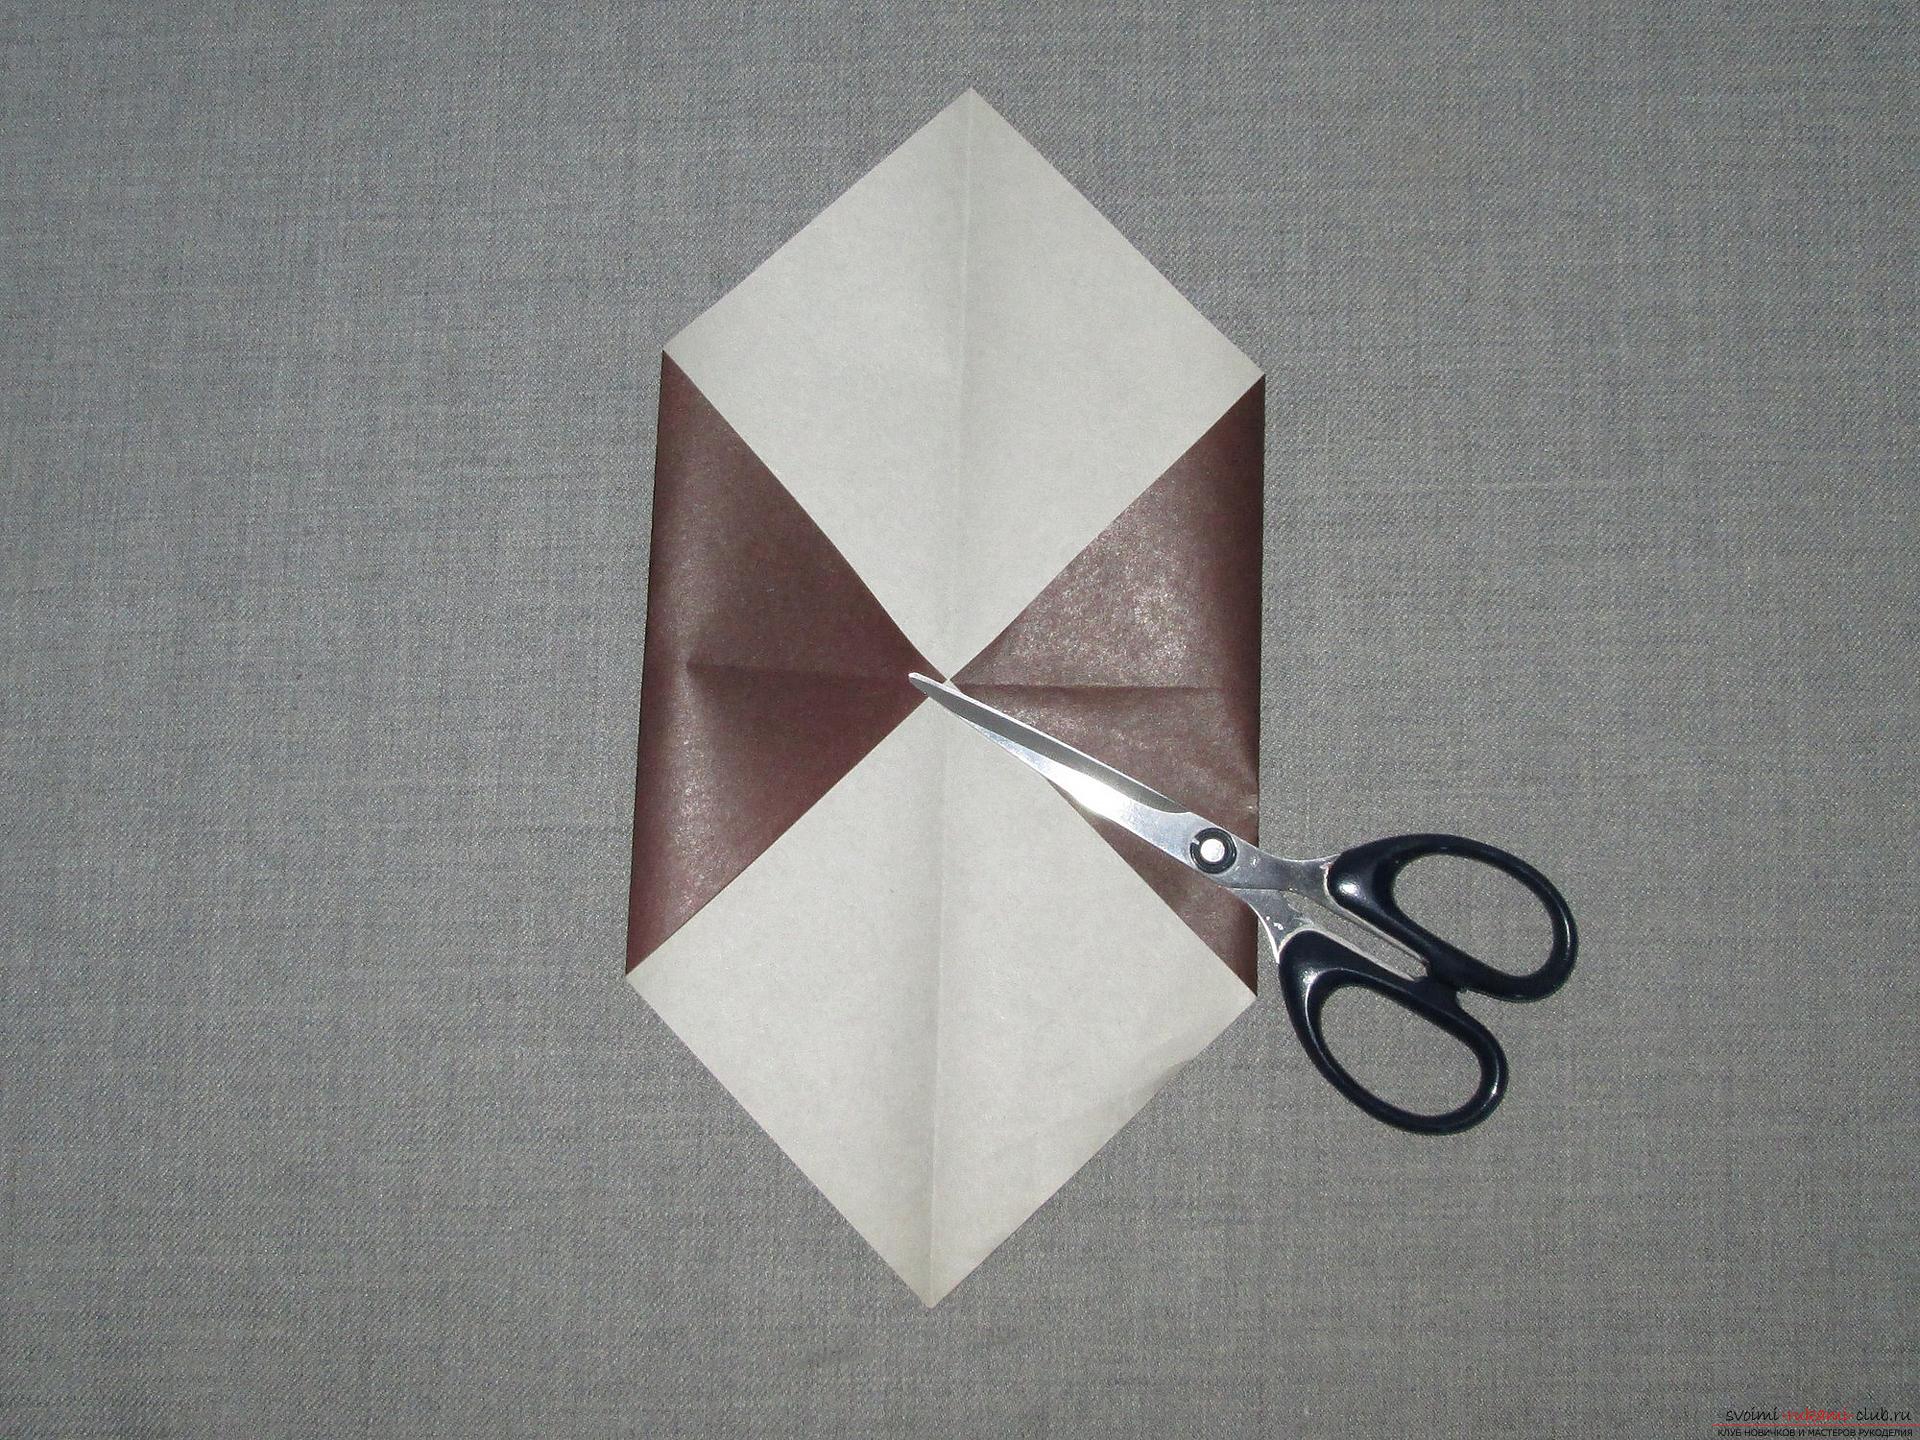 Этот подробный мастер-класс с фото и описание научит как сделать оригами для начинающих - оригами-собаку из бумаги.. Фото №4